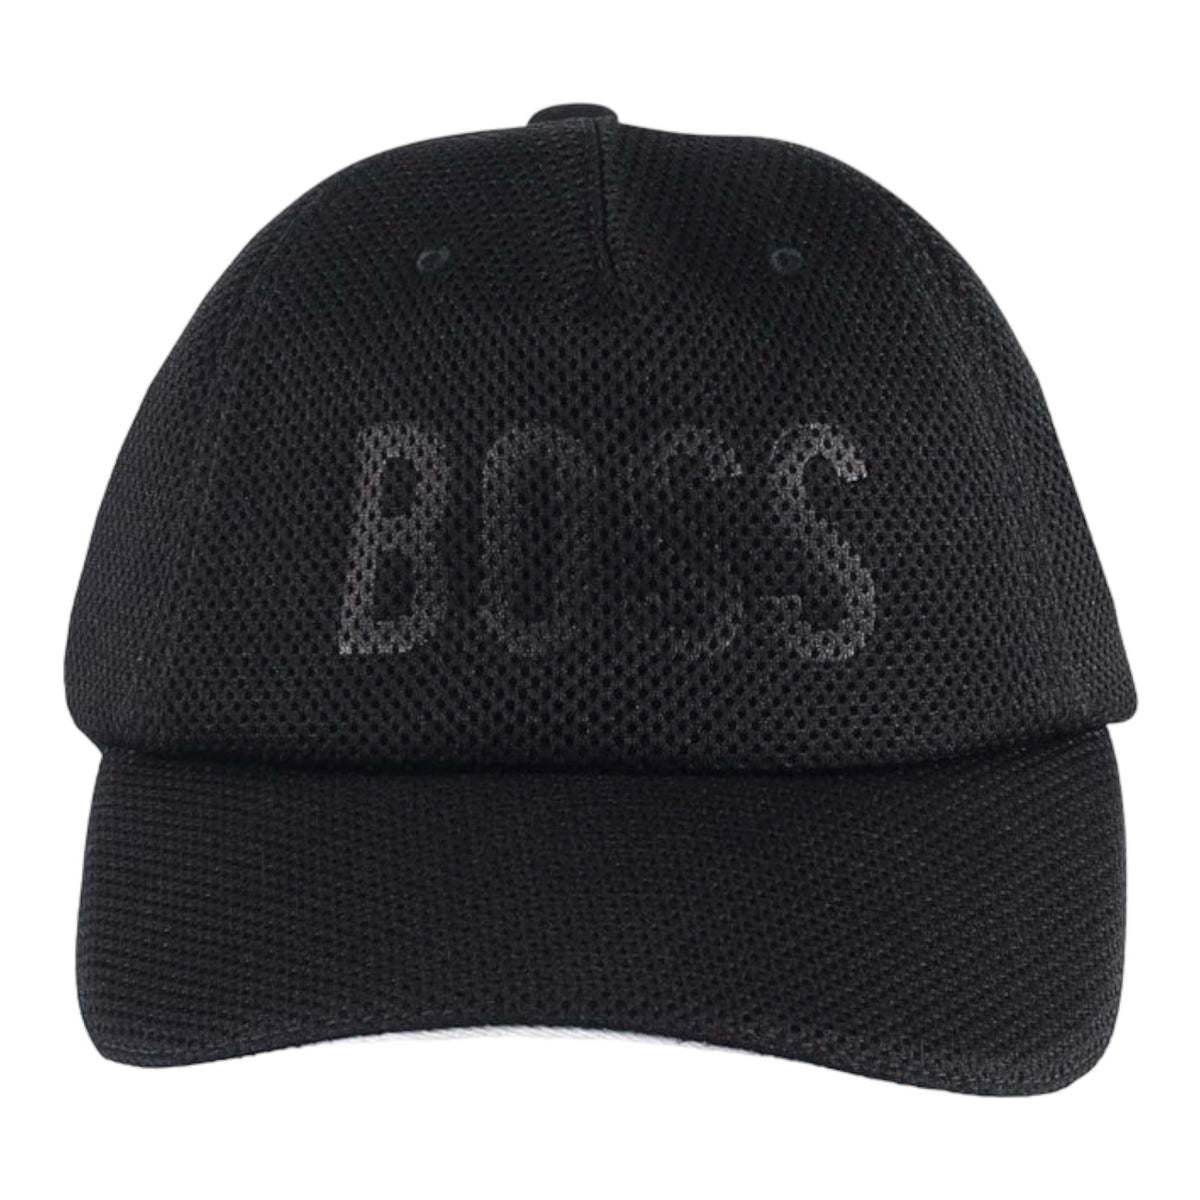 Hugo Boss Kids Mesh Baseball Cap